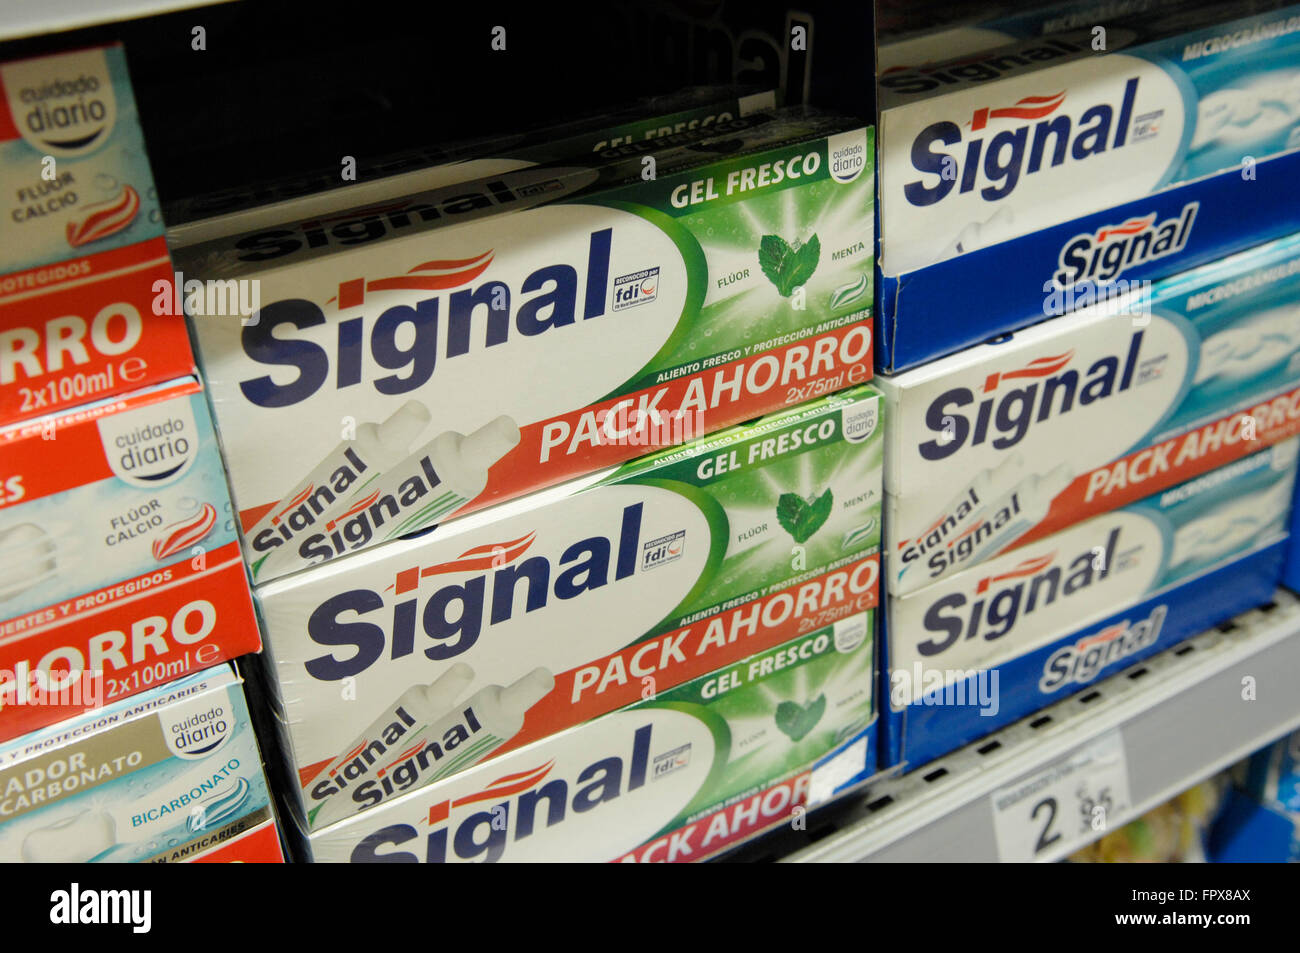 Visualización de la señal de la pasta producida por Unilever en un supermercado Carrefour. Foto de stock